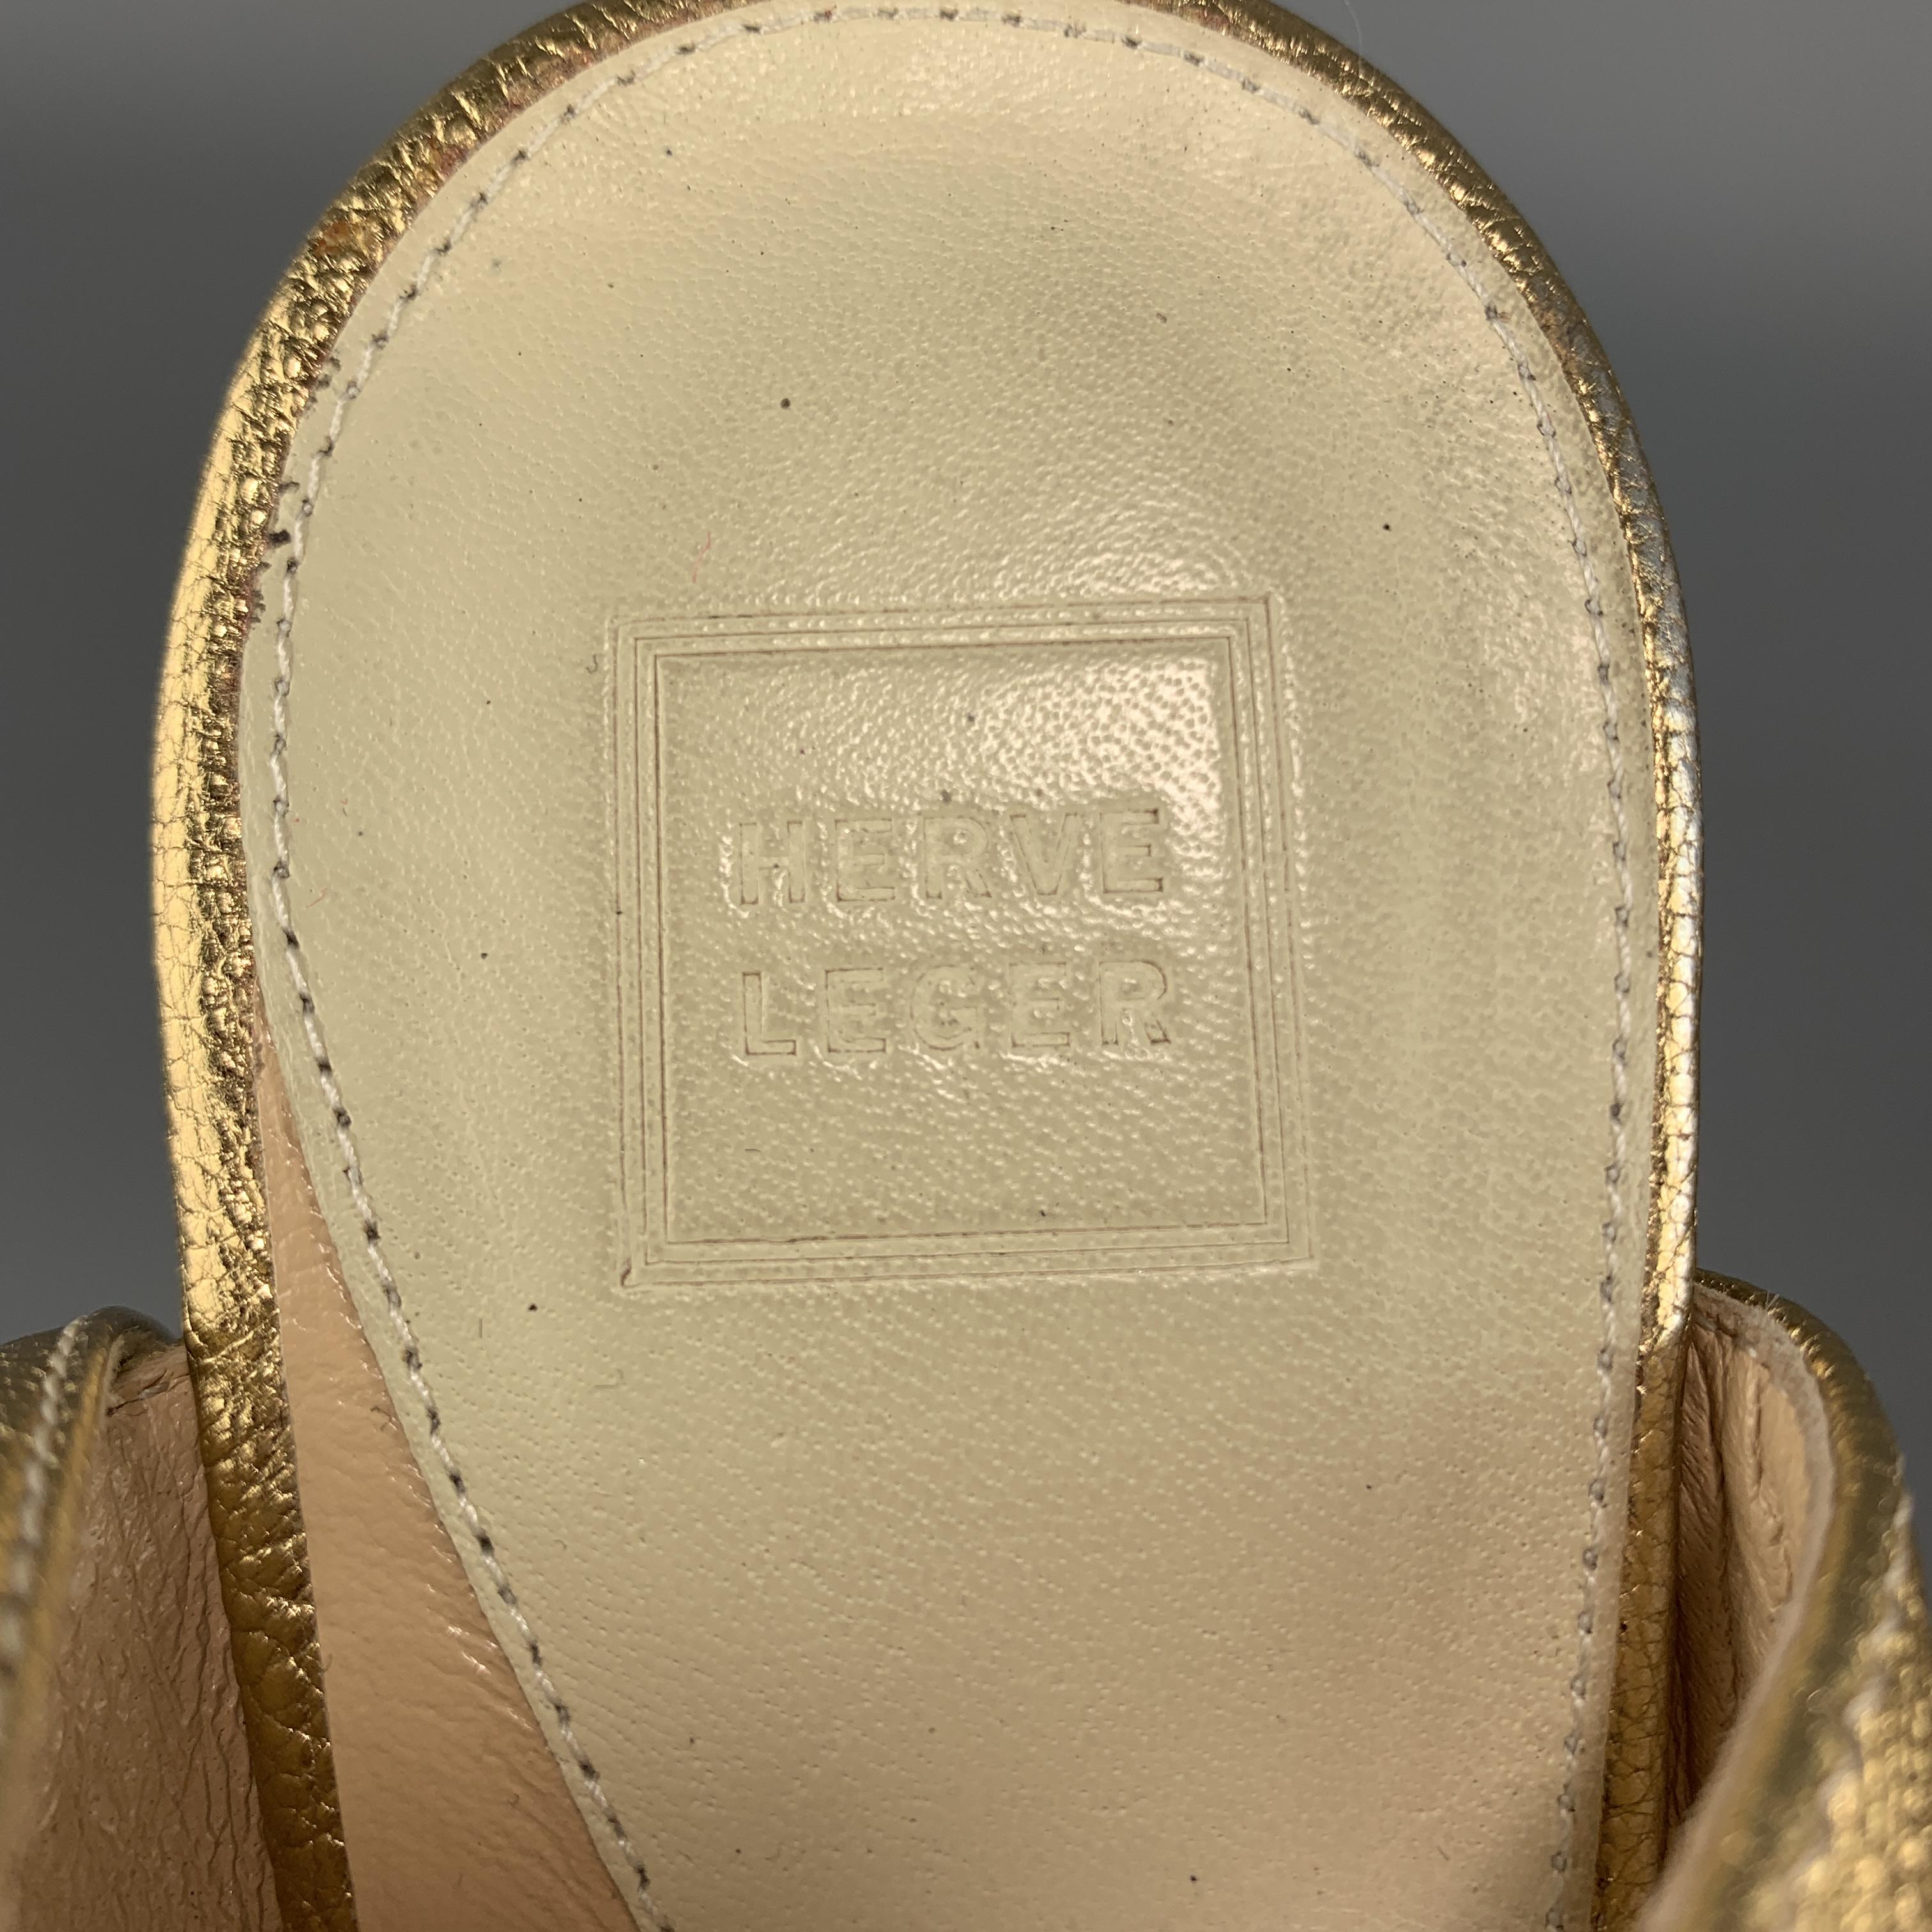 HERVE LEGER Size 7 Metallic Gold Leather Platform Sandals 3